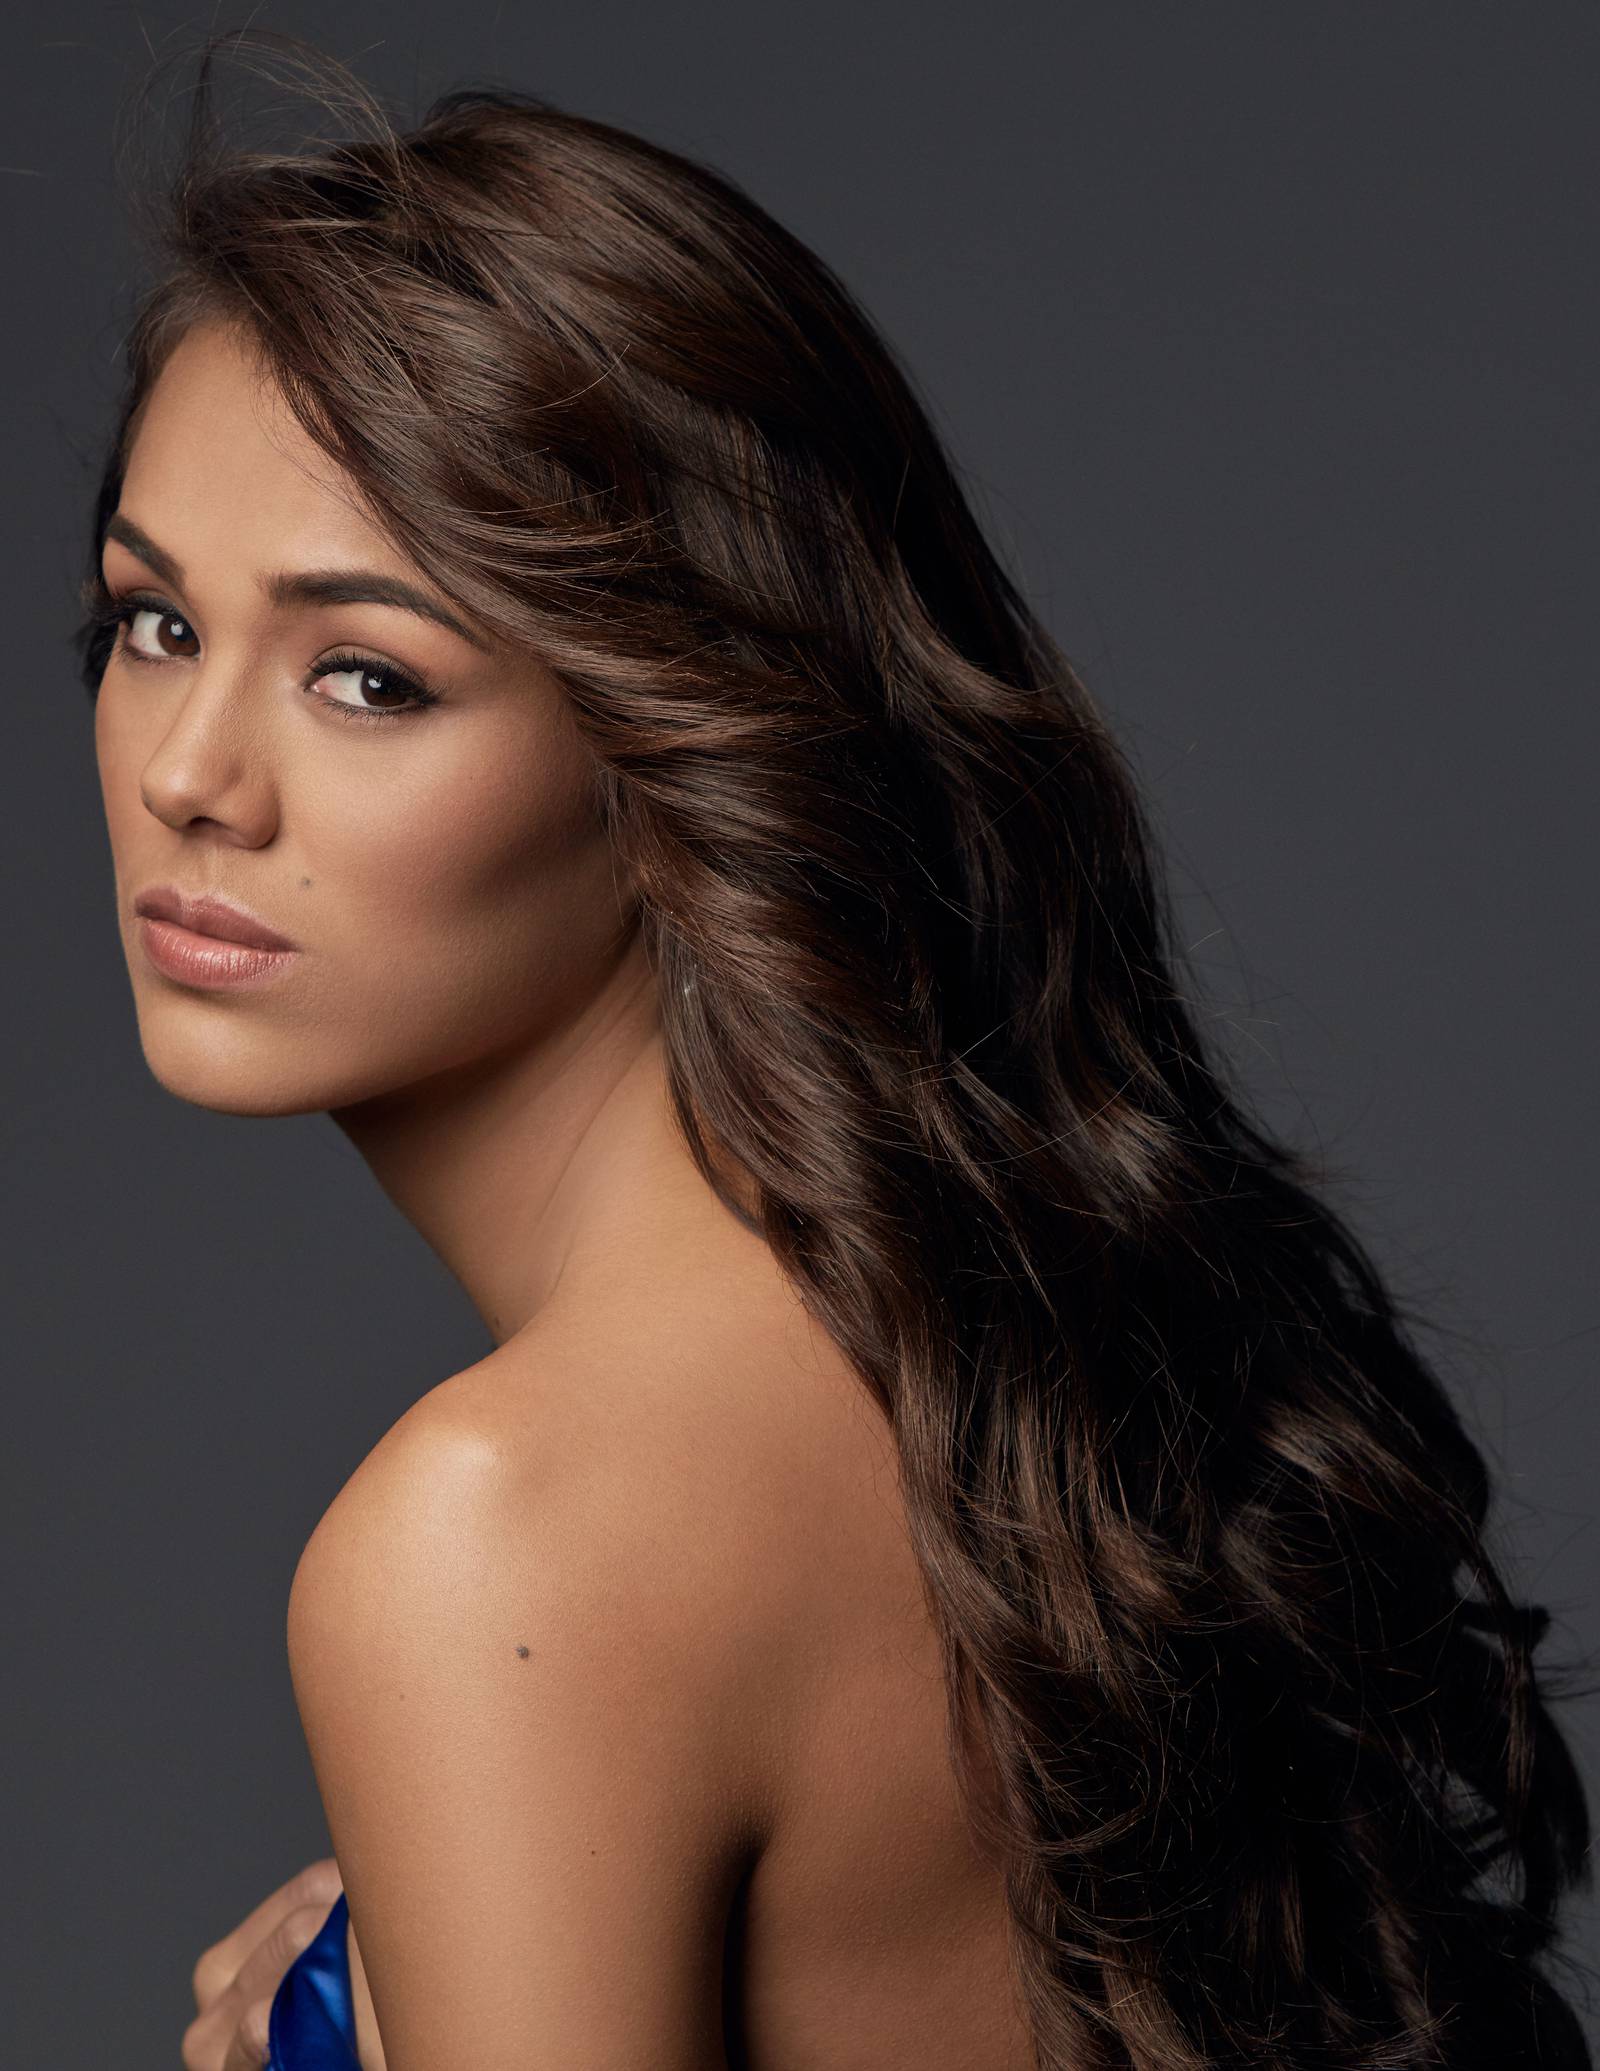 Miss Guatemala “Mi futuro no depende de una corona” Metro Ecuador